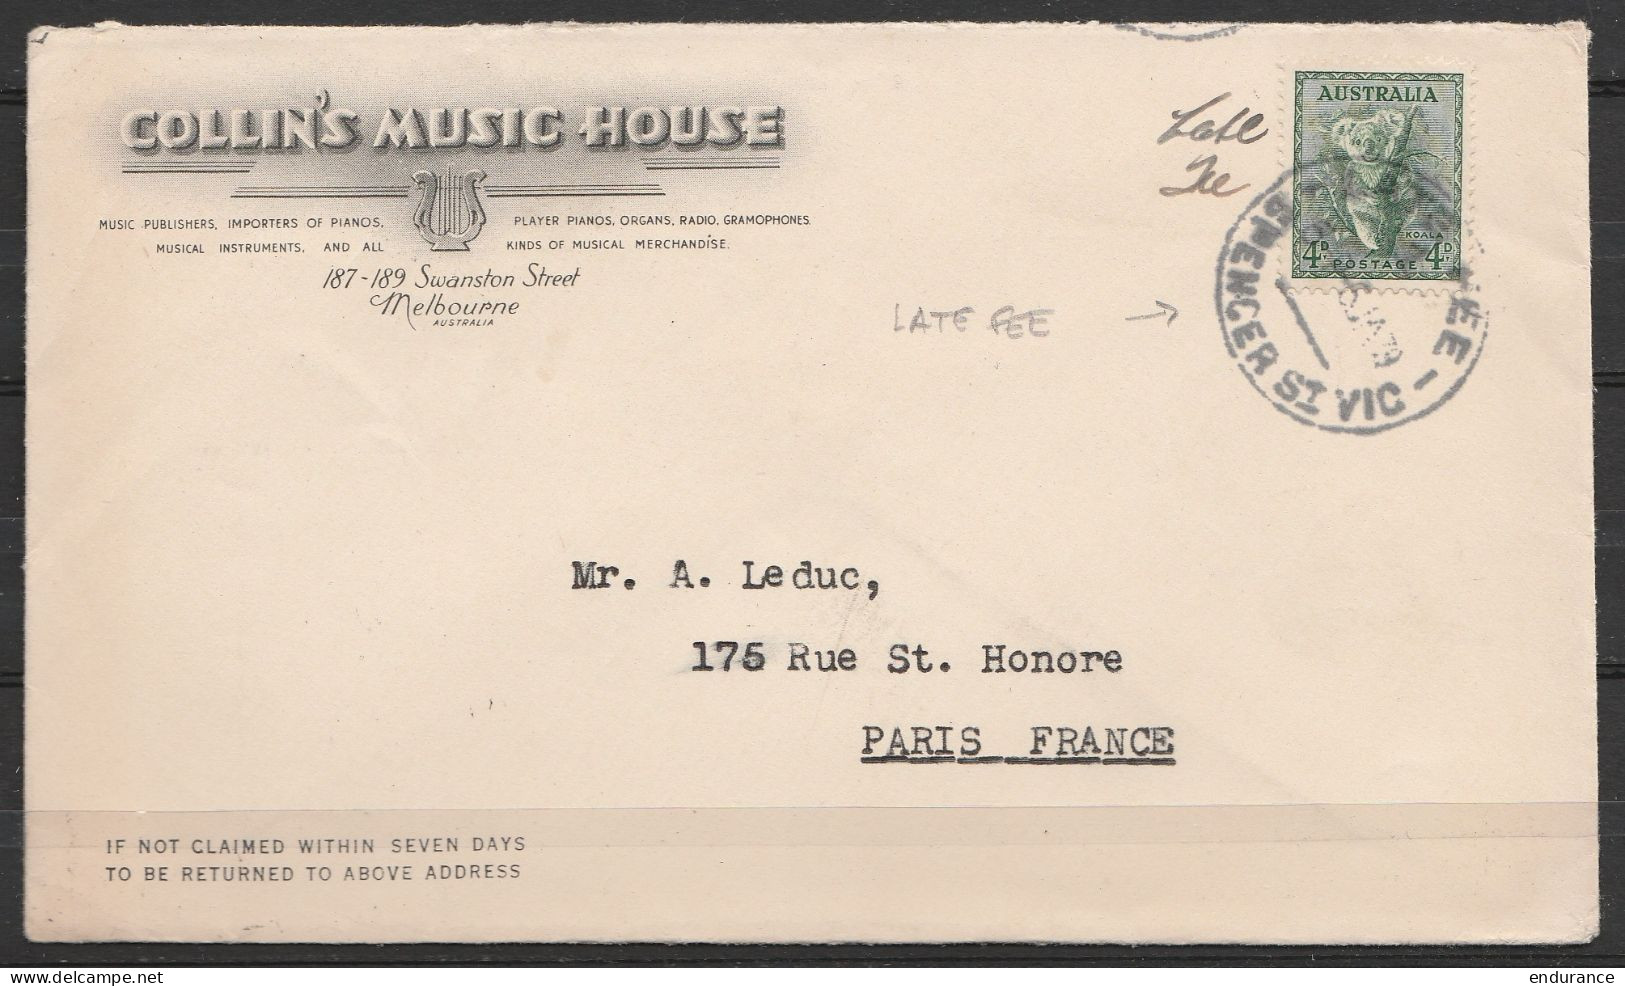 Australie - L. Entête "Collin's Music House" (Melbourne) Affr. 4d Càd "LATE FEE /6 JA 1939" Pour PARIS - Briefe U. Dokumente